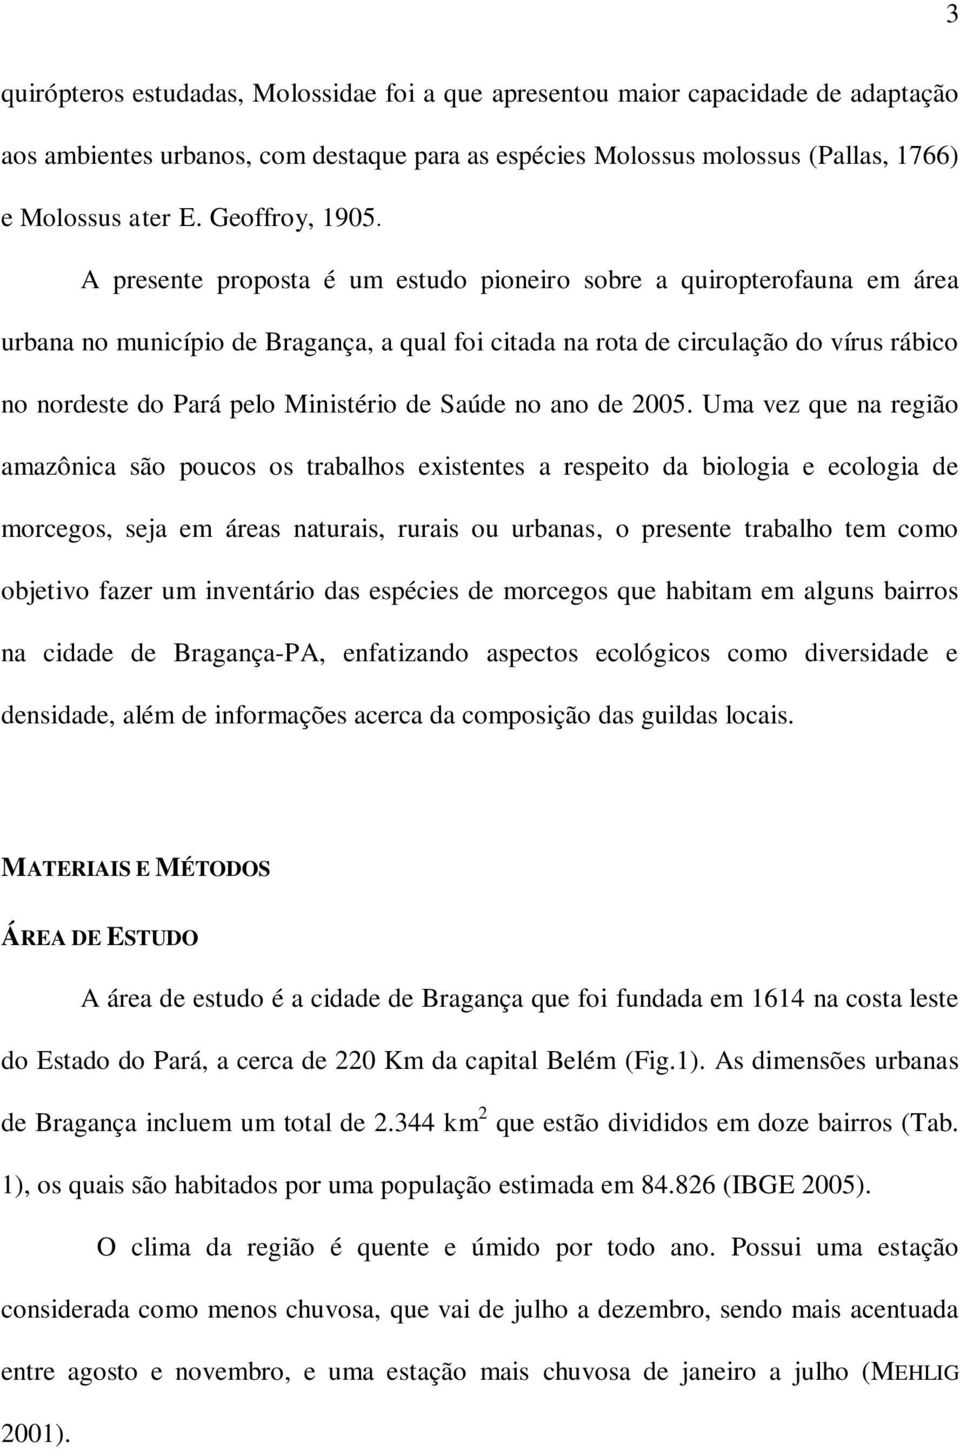 A presente proposta é um estudo pioneiro sobre a quiropterofauna em área urbana no município de Bragança, a qual foi citada na rota de circulação do vírus rábico no nordeste do Pará pelo Ministério